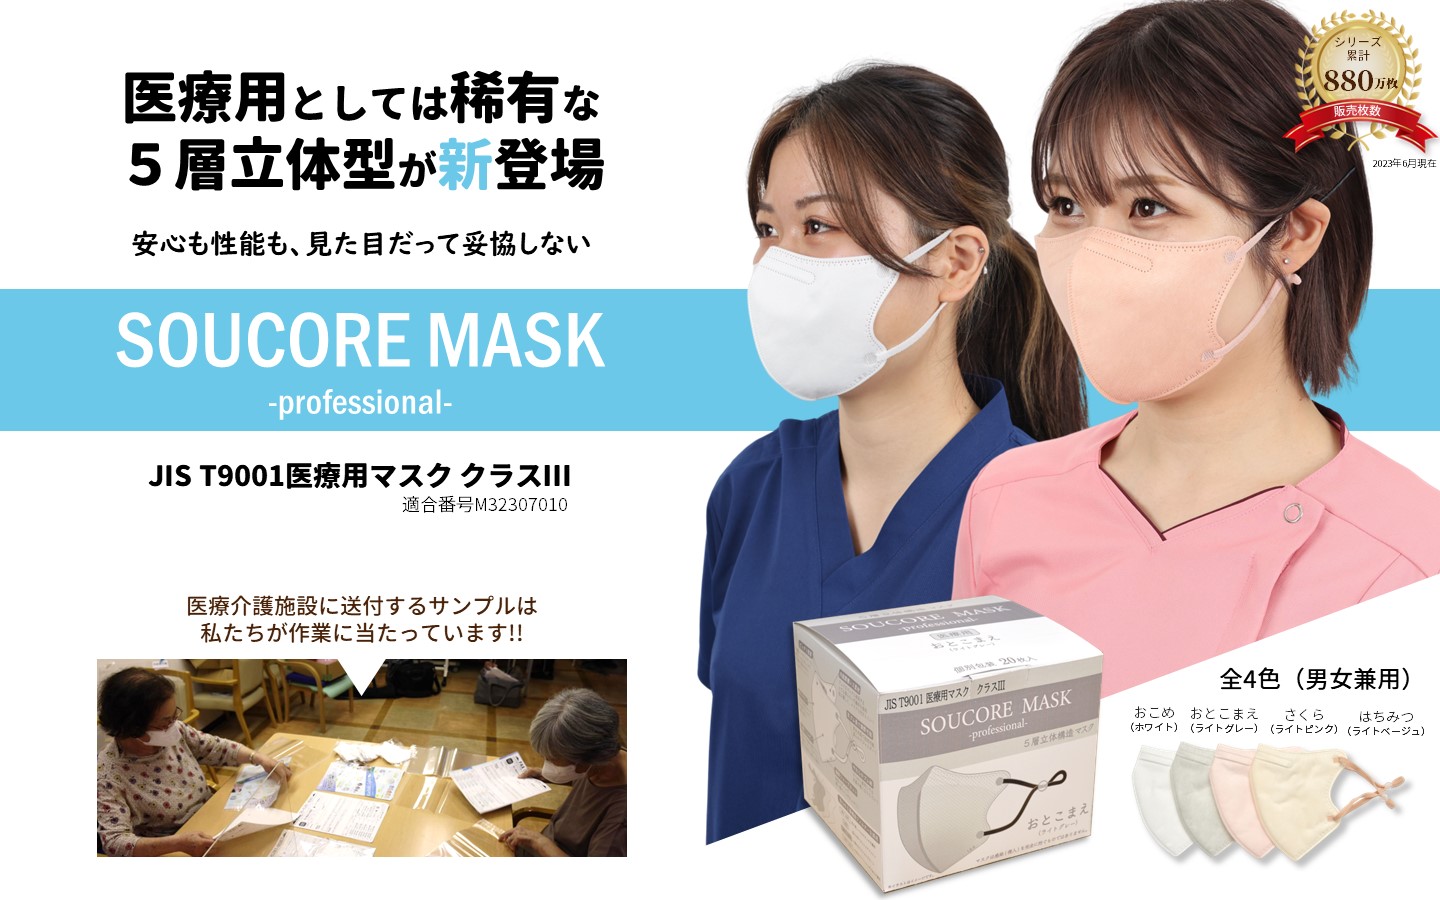 お年寄りと社会がつながる医療用高機能マスク SOUCORE MASK（ソウコレマスク）新発売